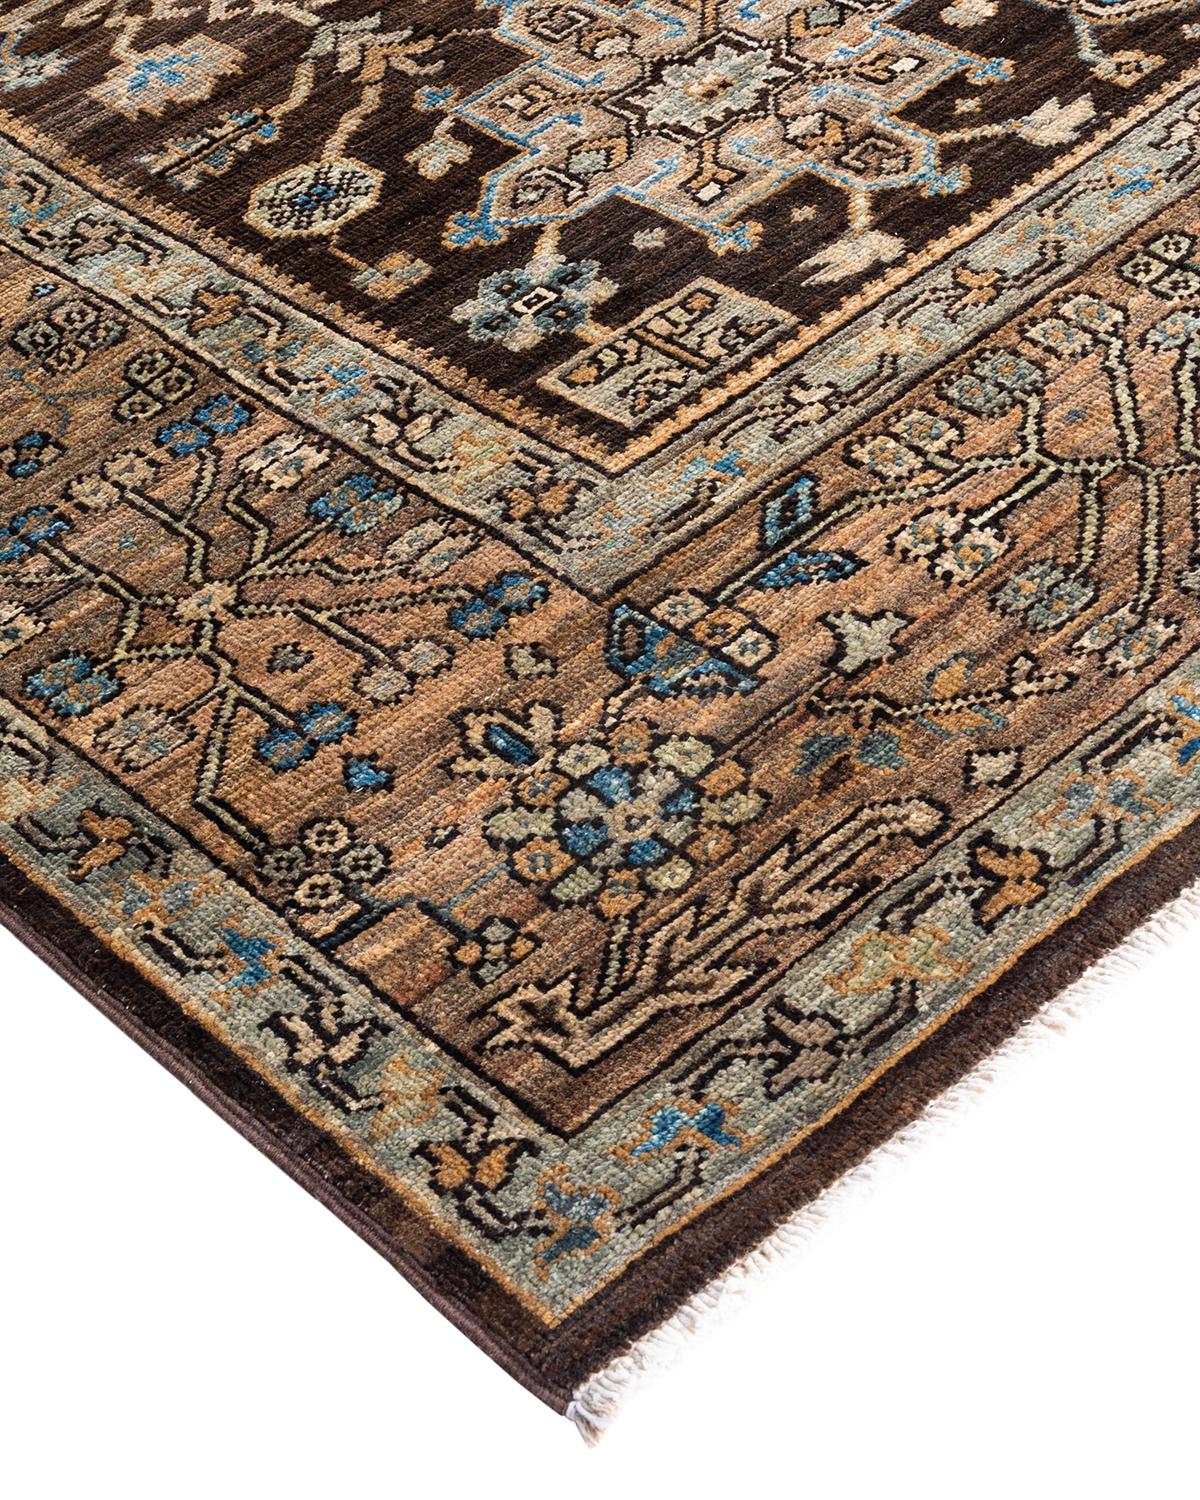 La fabrication des tapis persans dans toute sa splendeur a inspiré les couleurs riches, les motifs géométriques élaborés et les détails botaniques de la collection Serapi. Avec pas moins de 100 nœuds par pouce, ces tapis fabriqués à la main sont